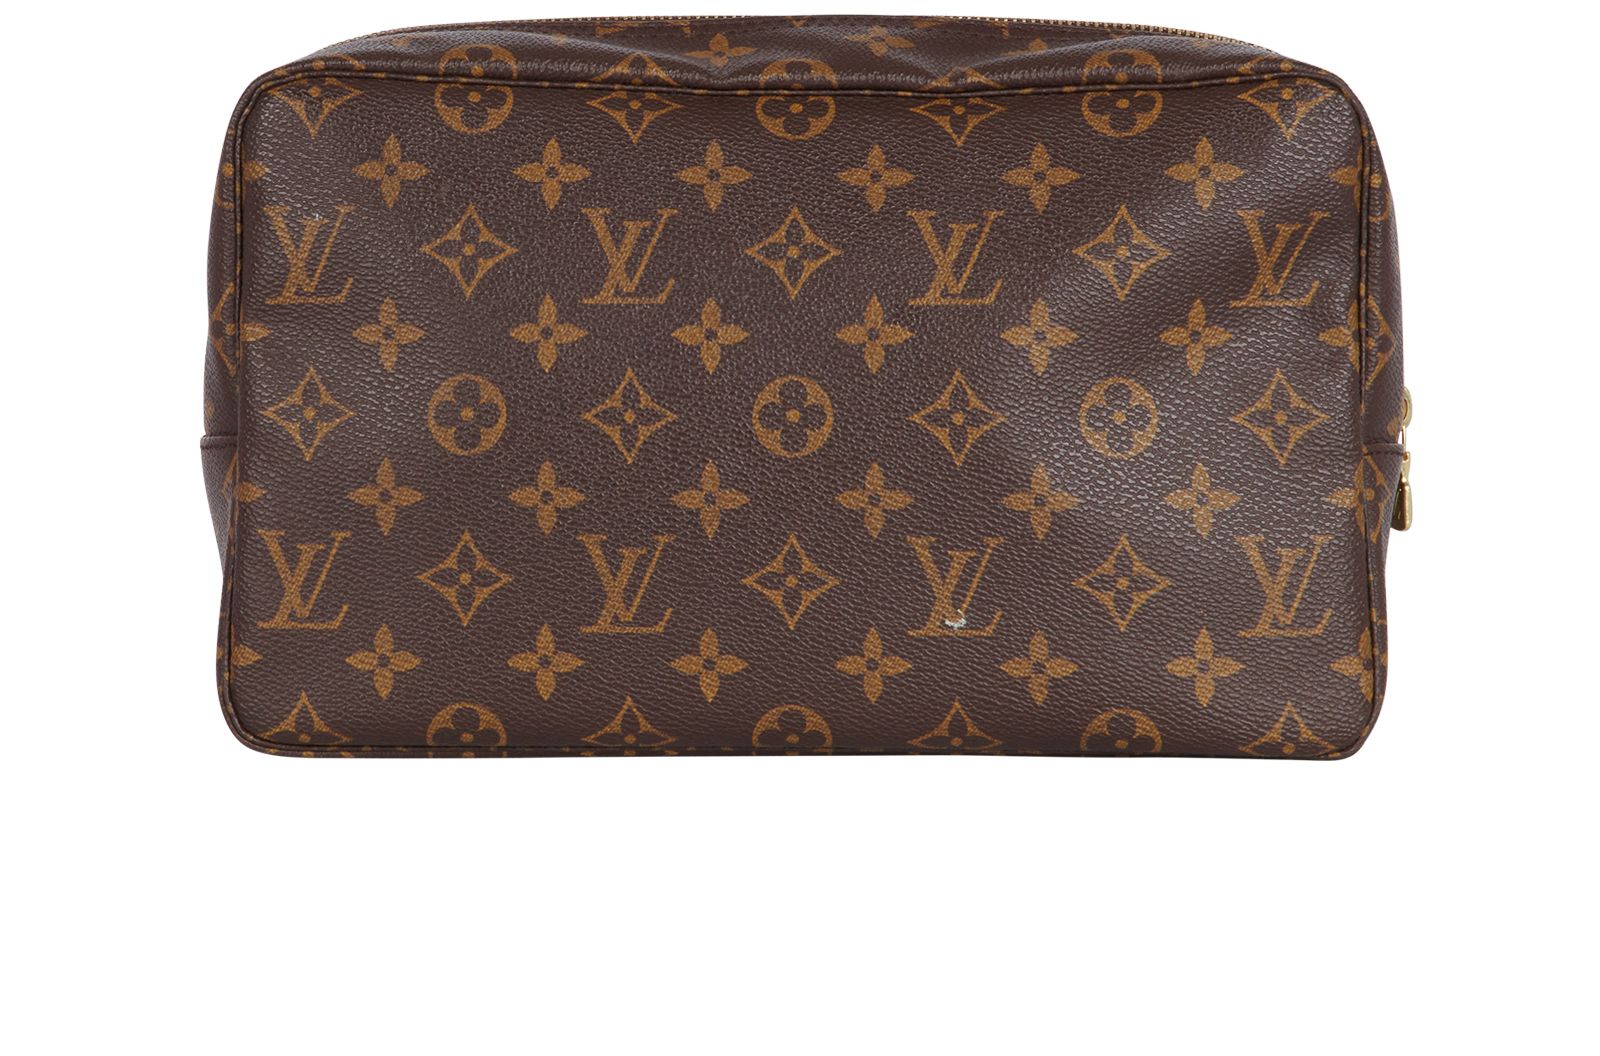 Louis Vuitton Trousse de toilette patent leather clutch bag